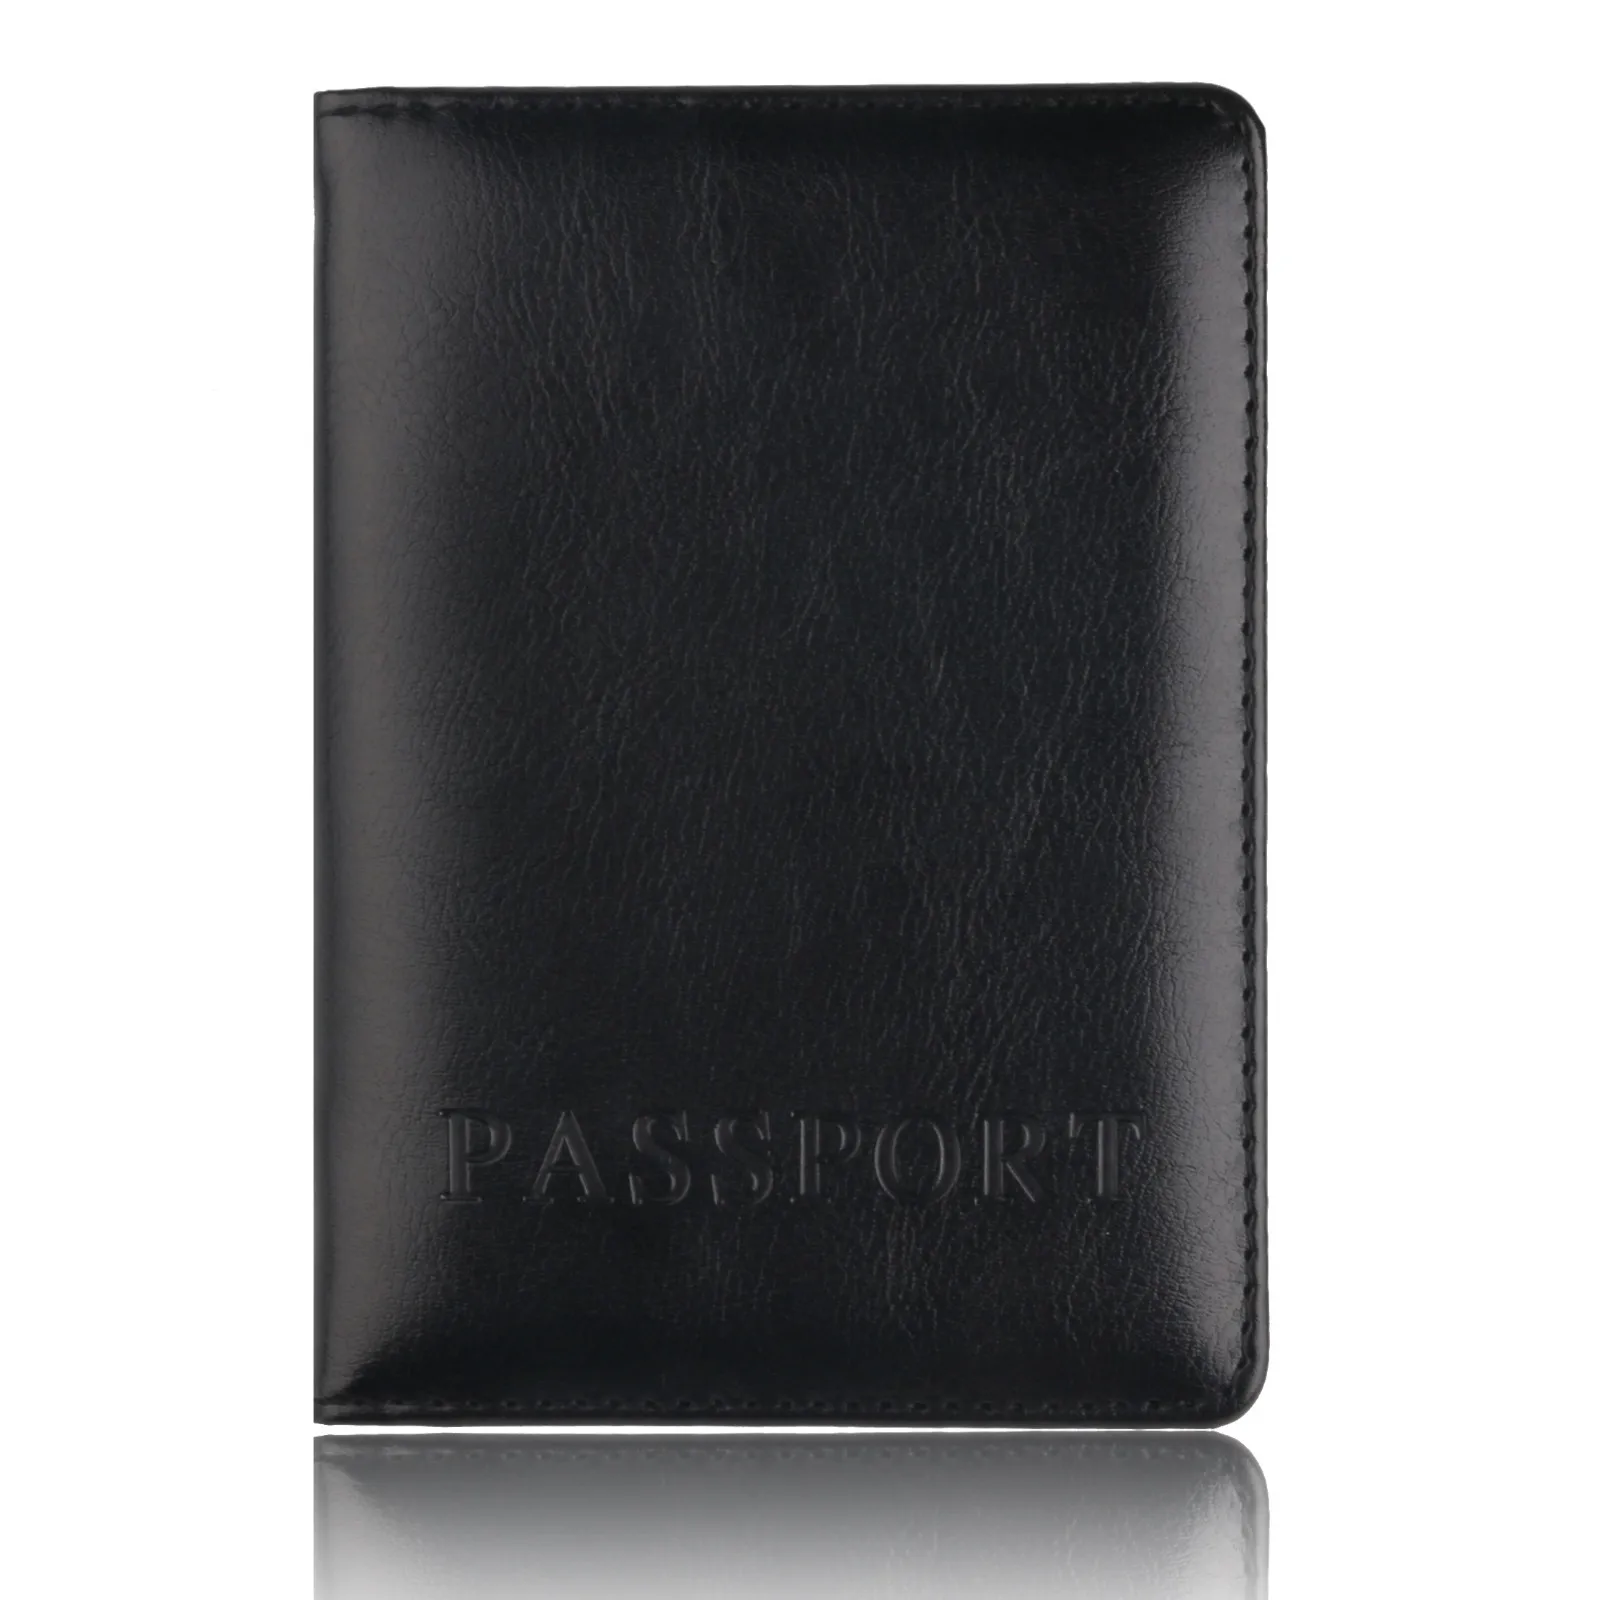 Кожаный бумажник для паспорта, бумажника, Обложка для паспорта, мягкая обложка для паспорта